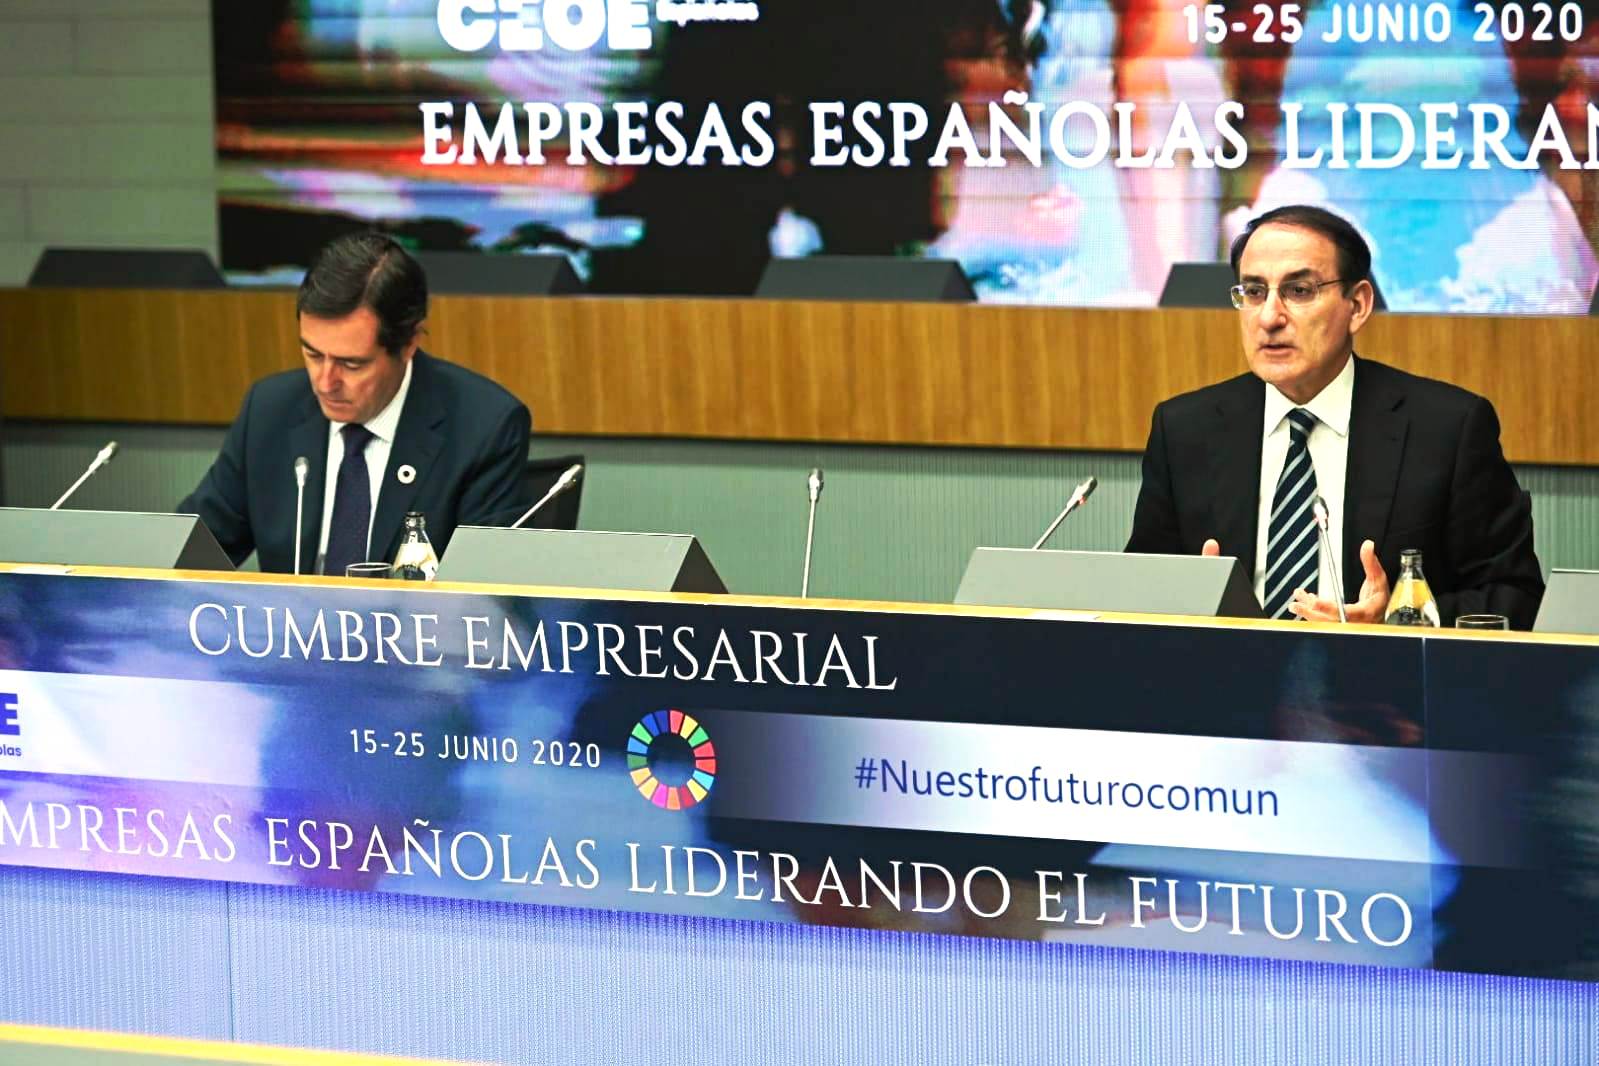 Intervención del Presidente de CEA en la cumbre empresarial de CEOE “Empresas españolas liderando el futuro”